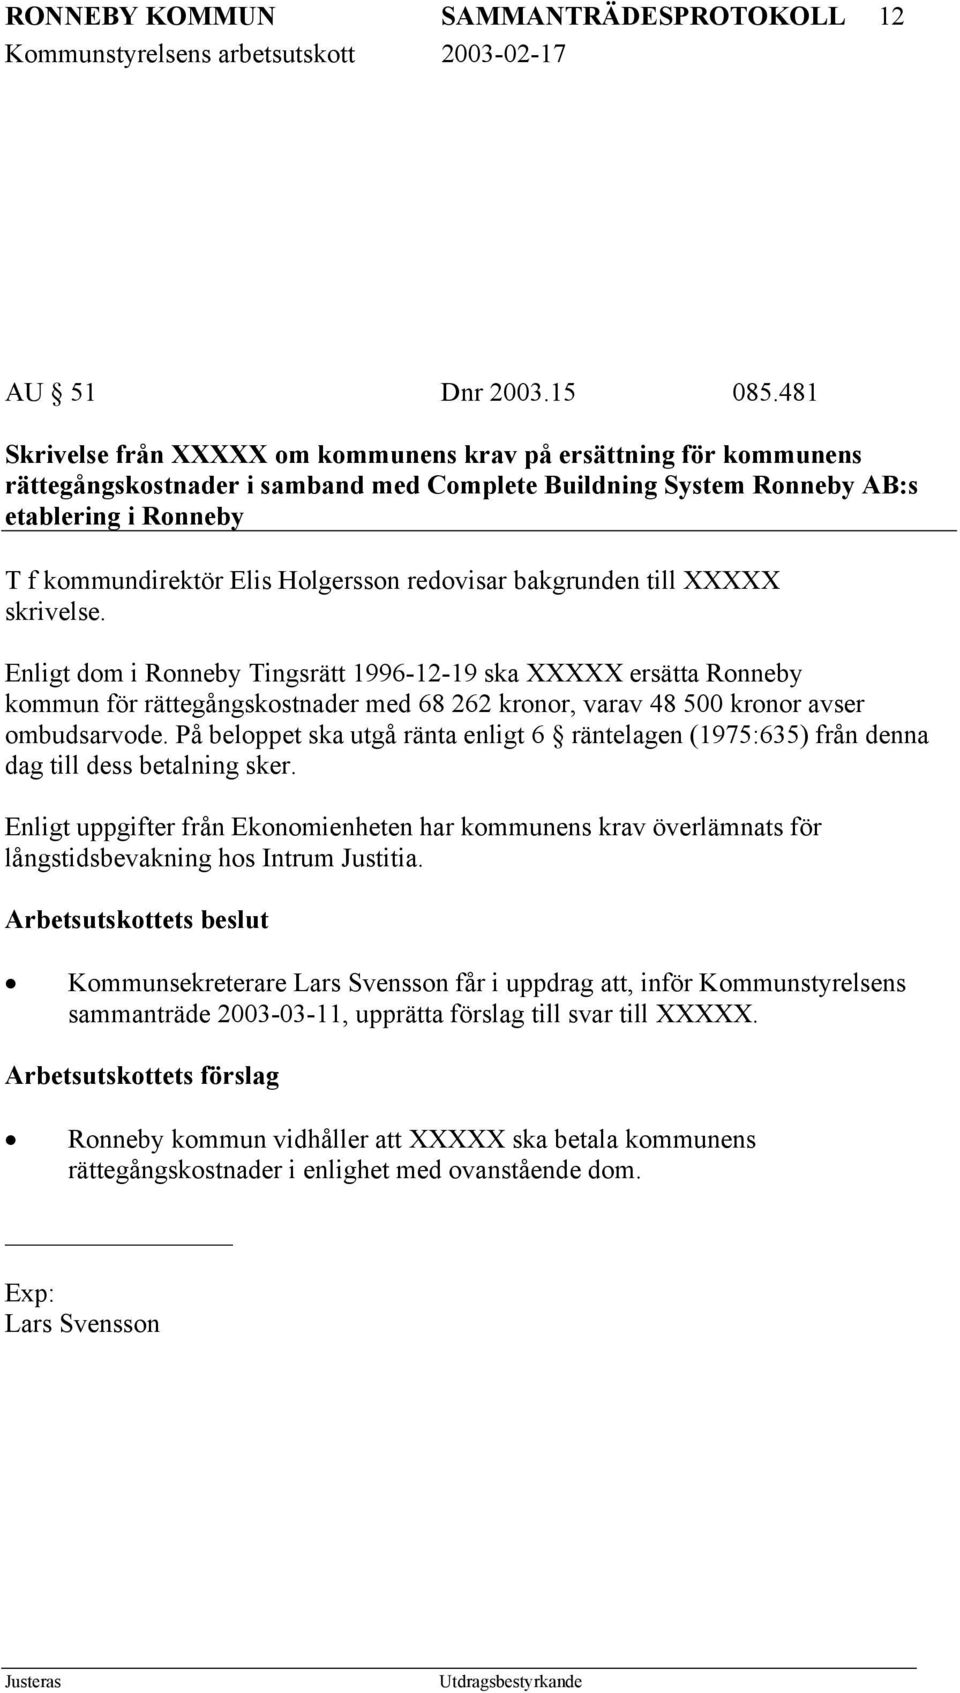 redovisar bakgrunden till XXXXX skrivelse. Enligt dom i Ronneby Tingsrätt 1996-12-19 ska XXXXX ersätta Ronneby kommun för rättegångskostnader med 68 262 kronor, varav 48 500 kronor avser ombudsarvode.